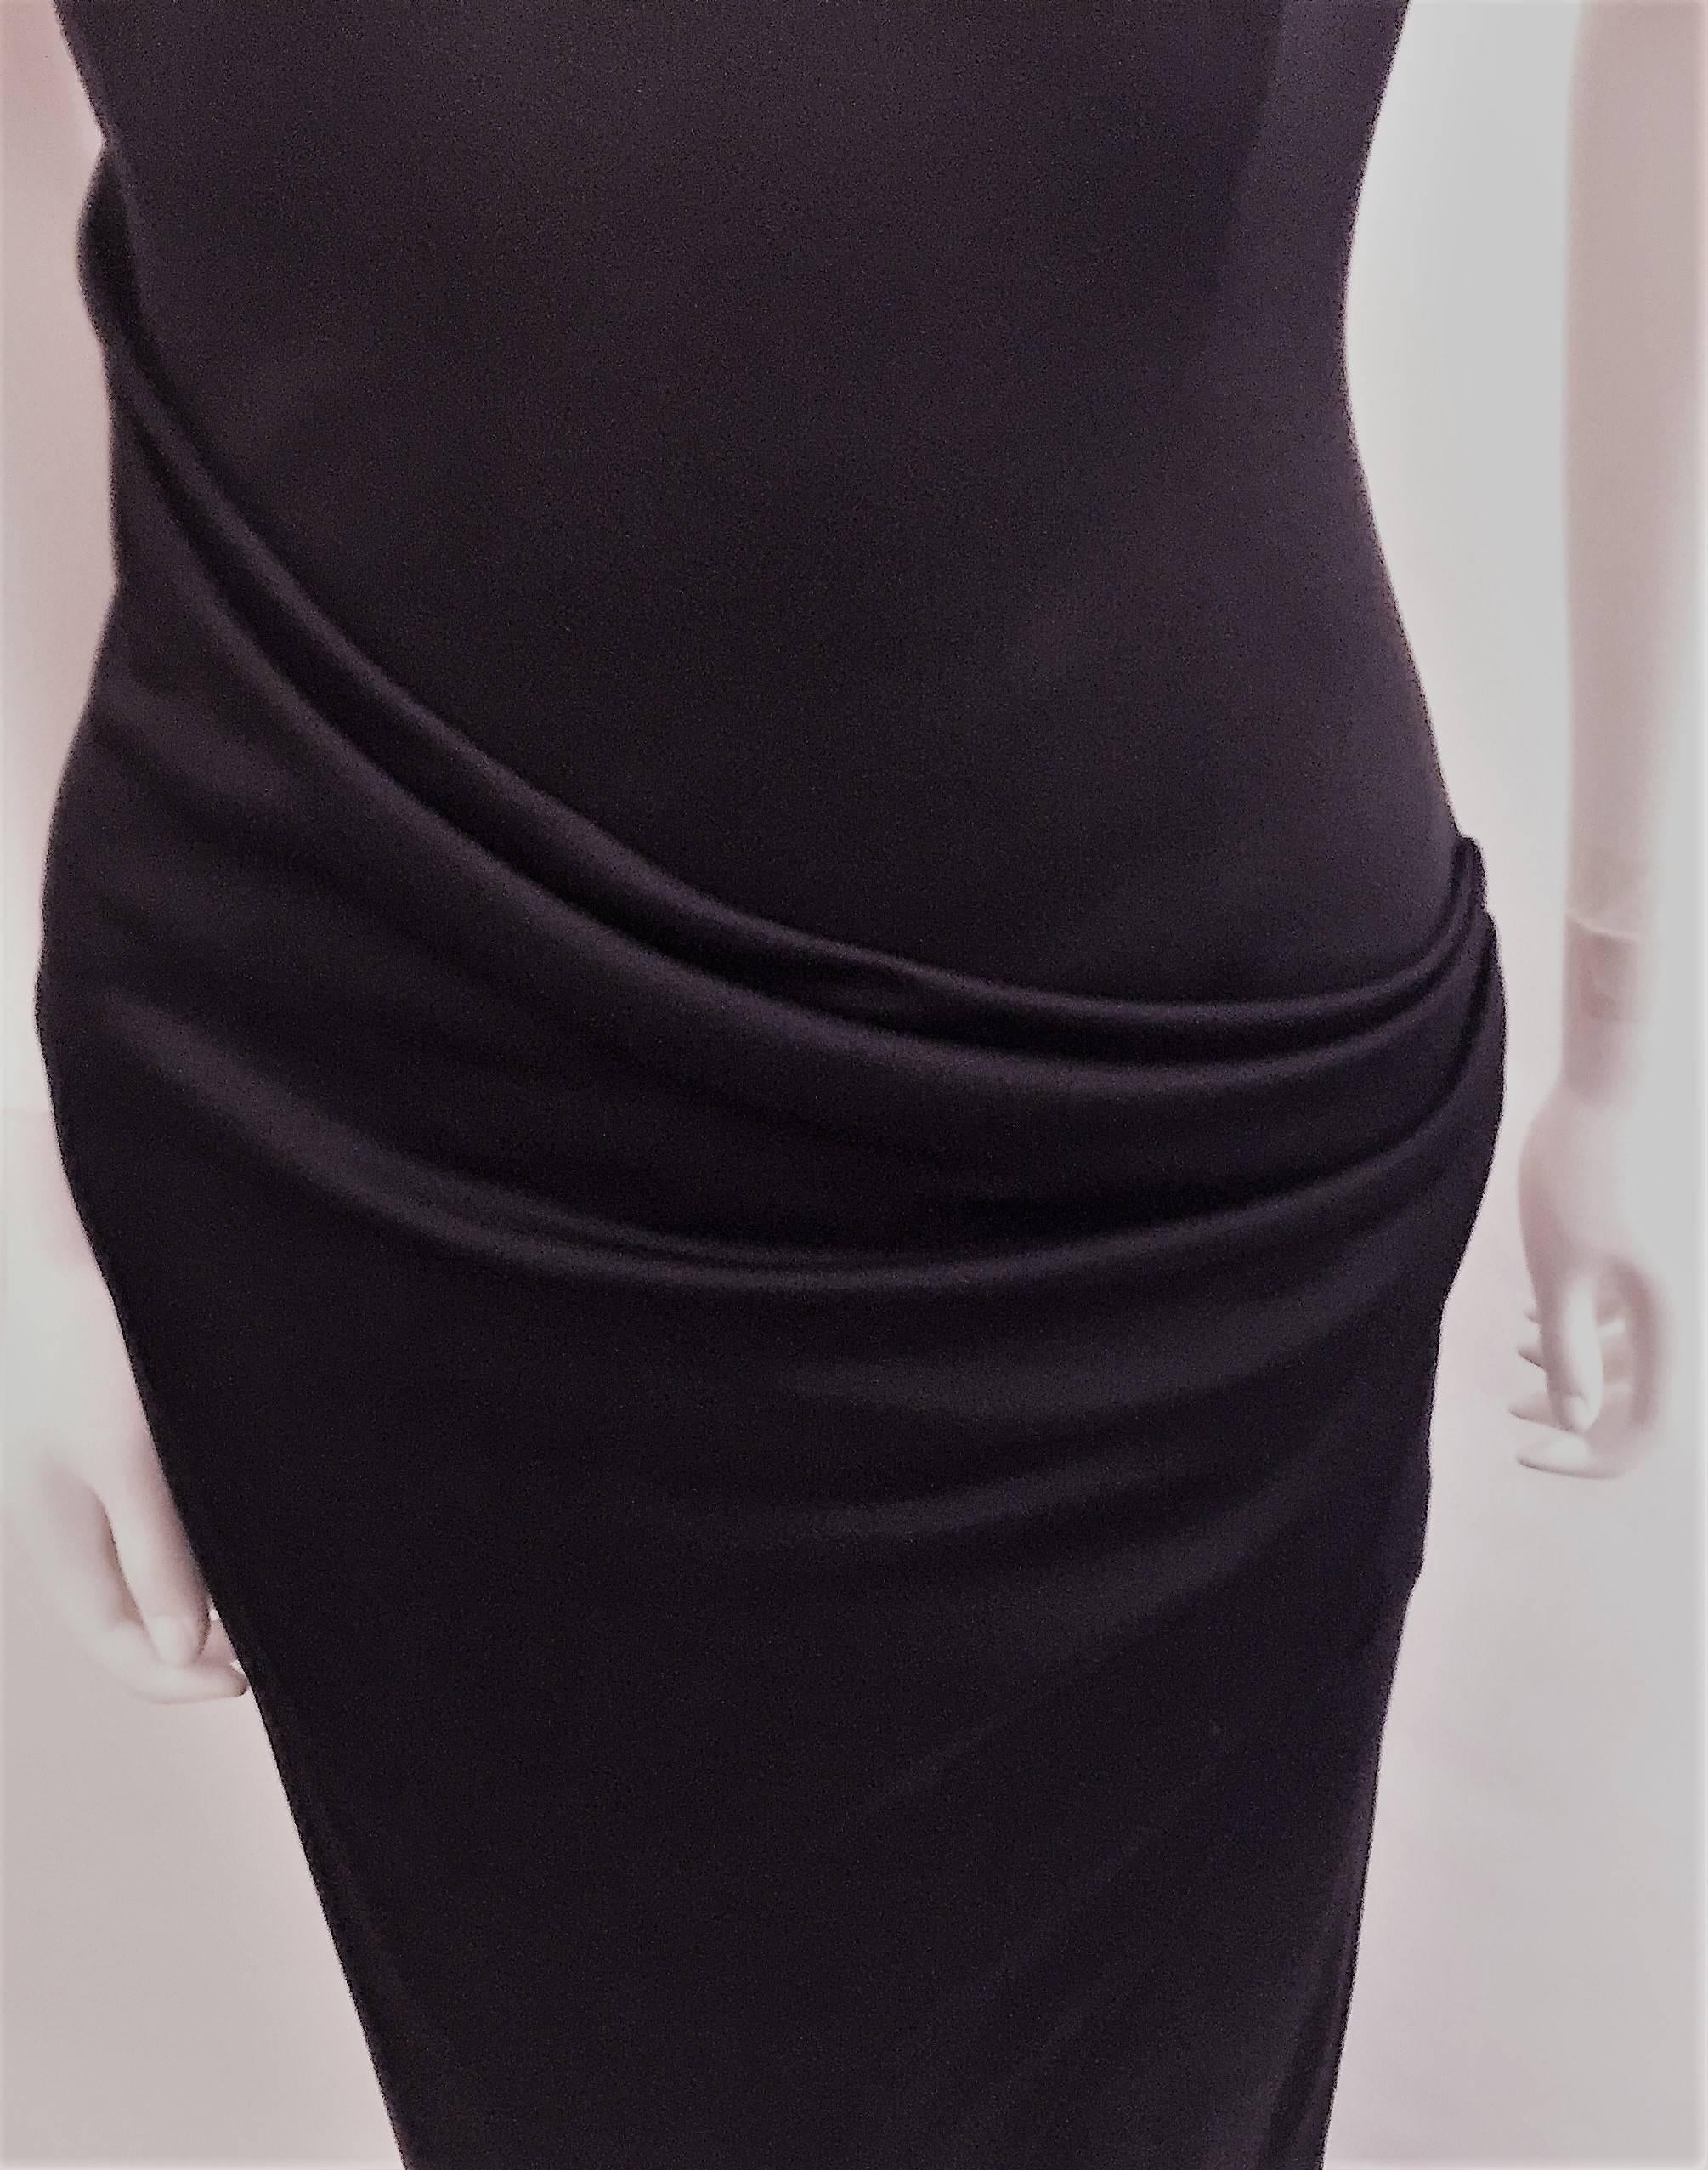 RALPH LAUREN Collection Black Column Maxi Dress.   2